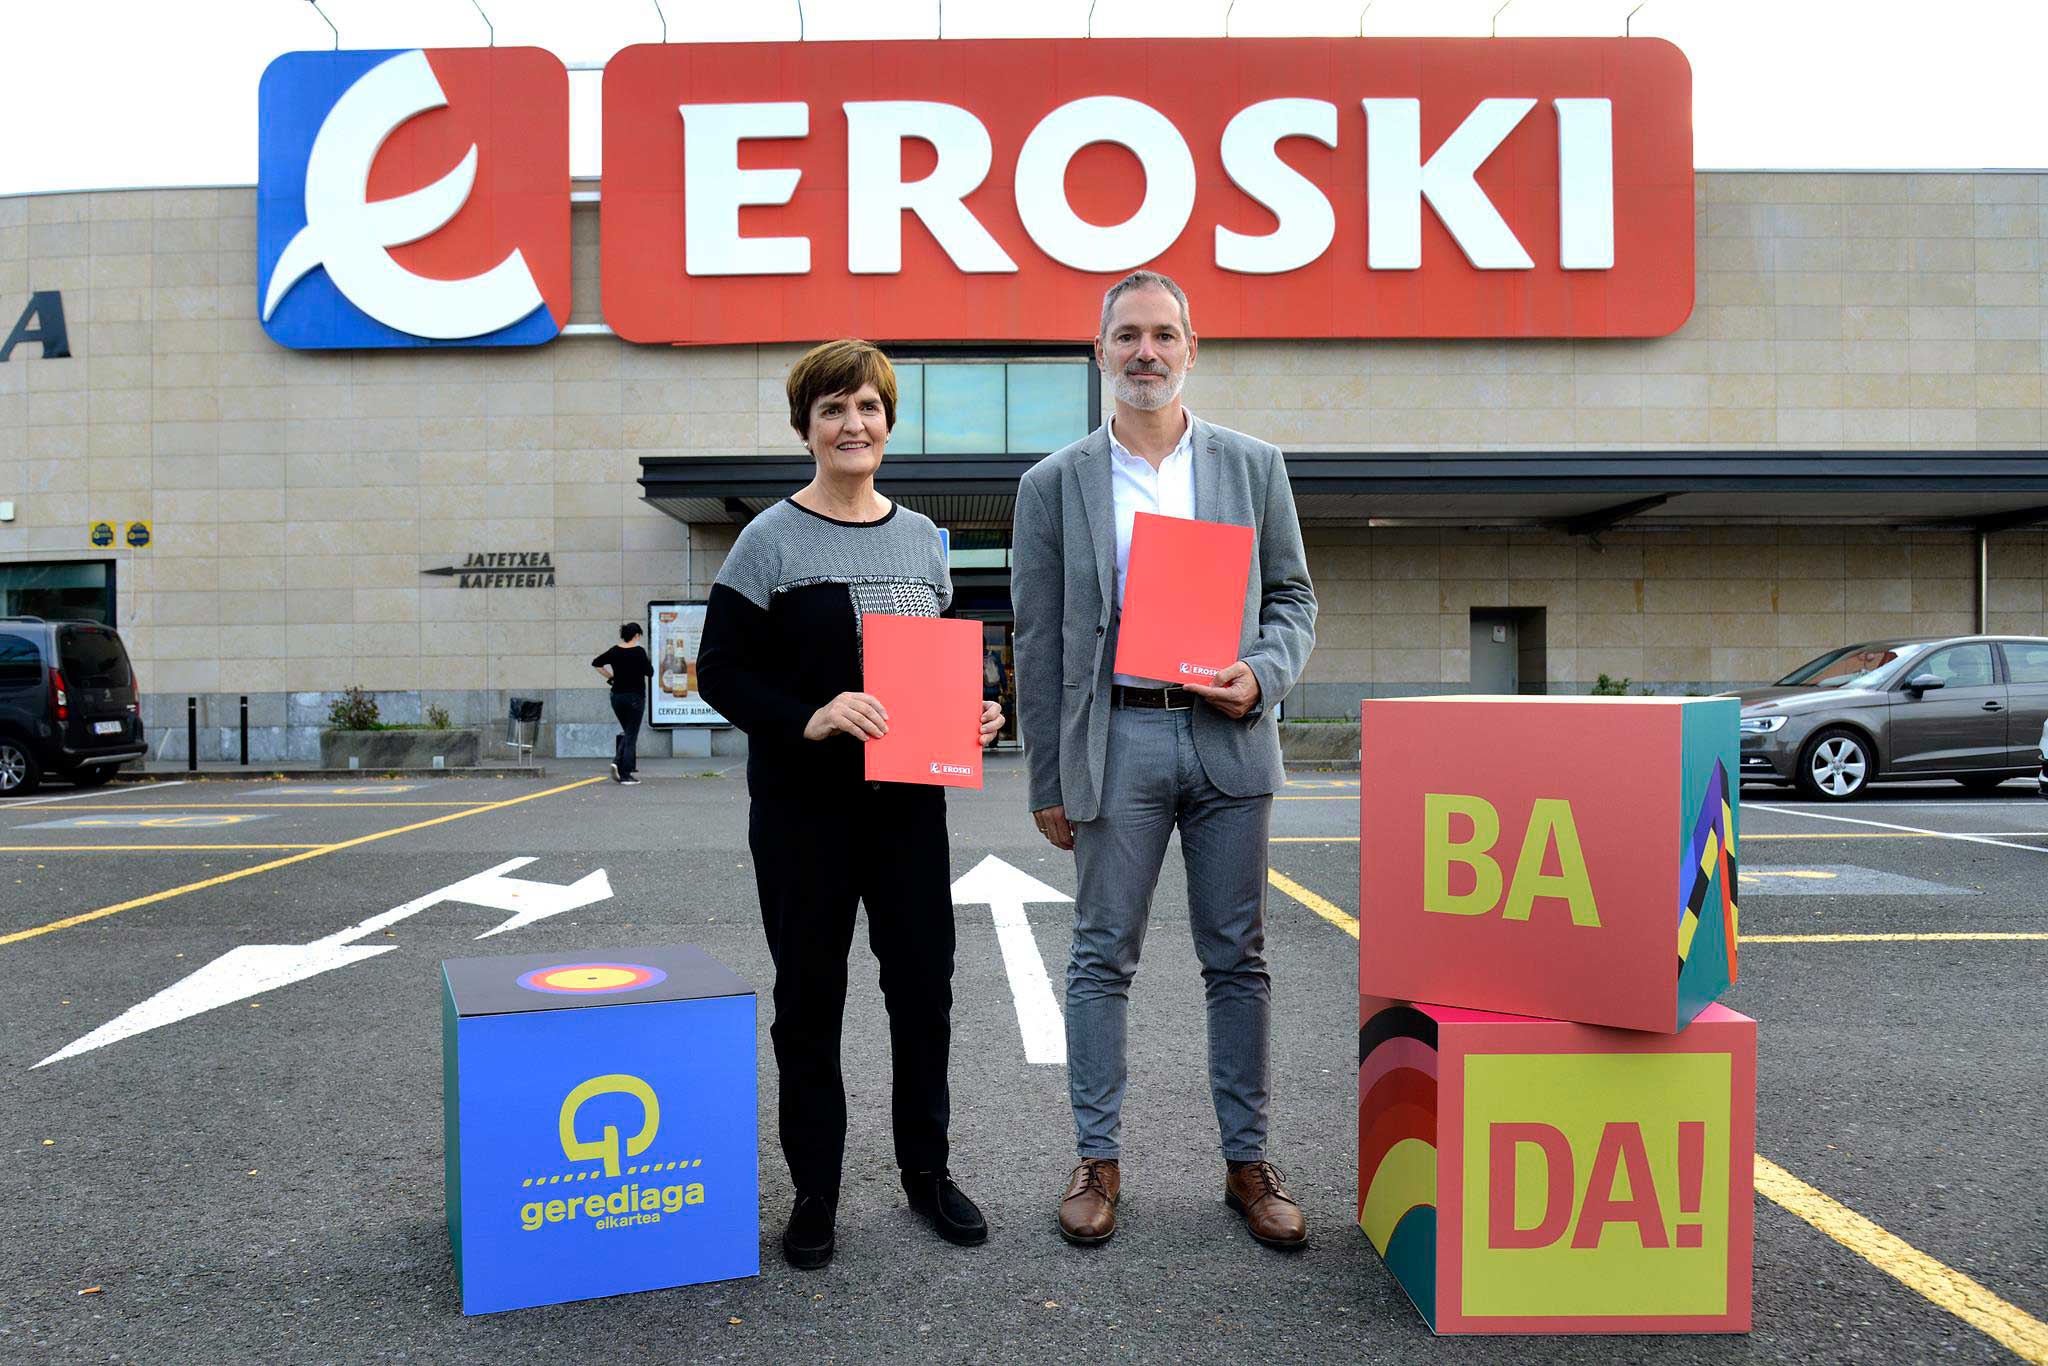 Convenio entre la Azoka y Eroski para impulsar la cultura vasca